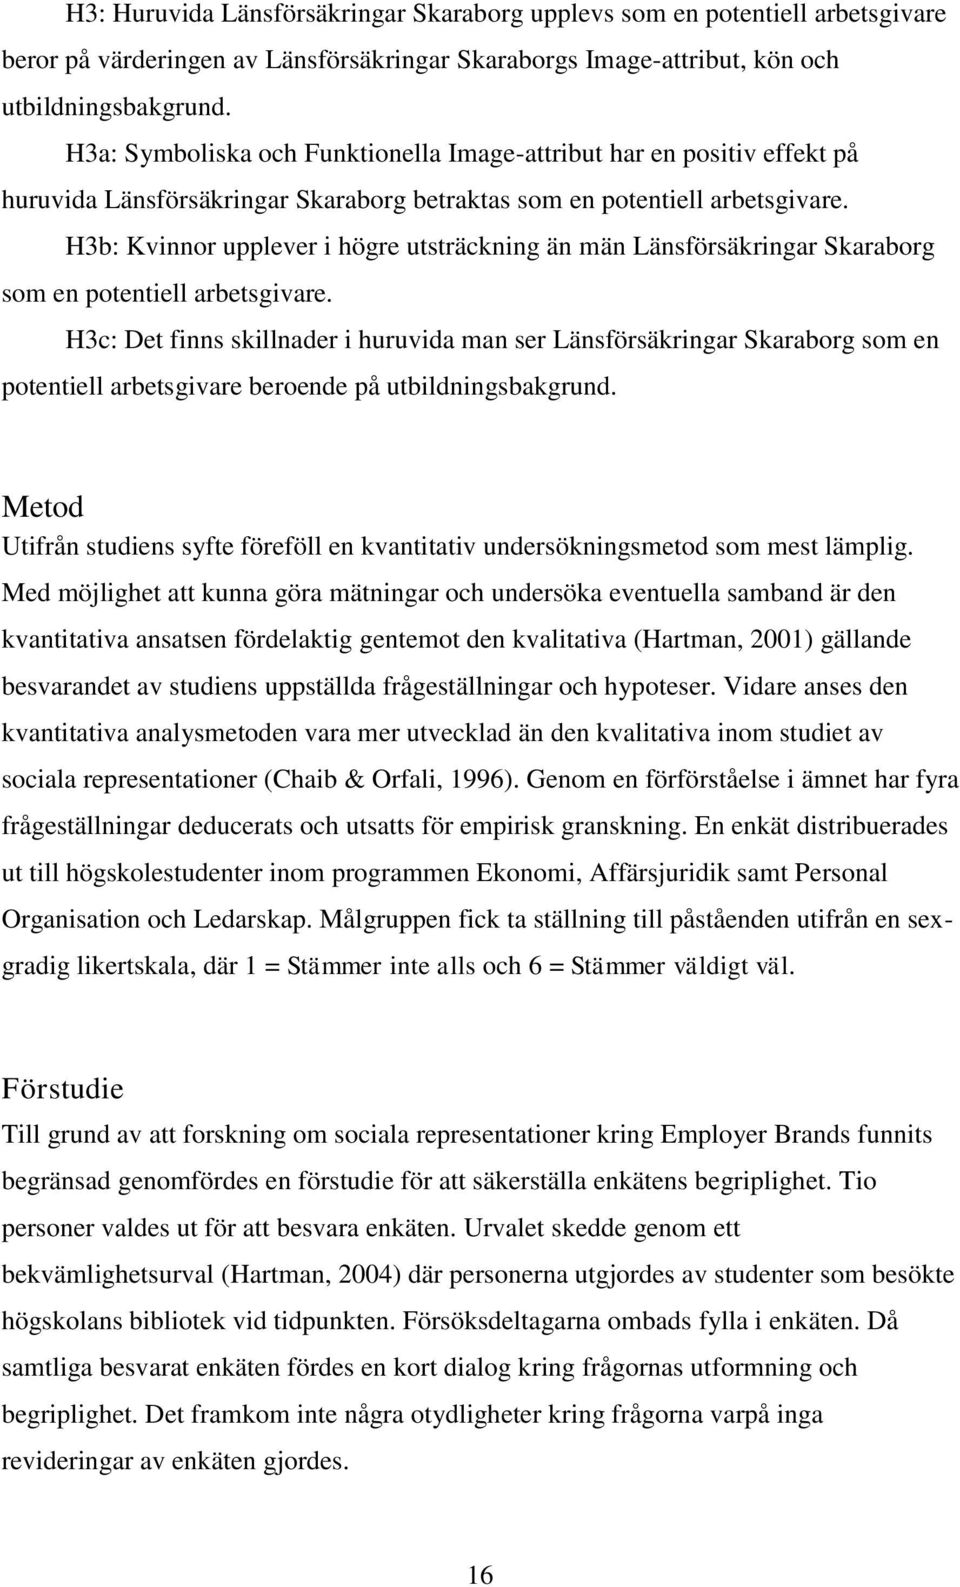 H3b: Kvinnor upplever i högre utsträckning än män Länsförsäkringar Skaraborg som en potentiell arbetsgivare.